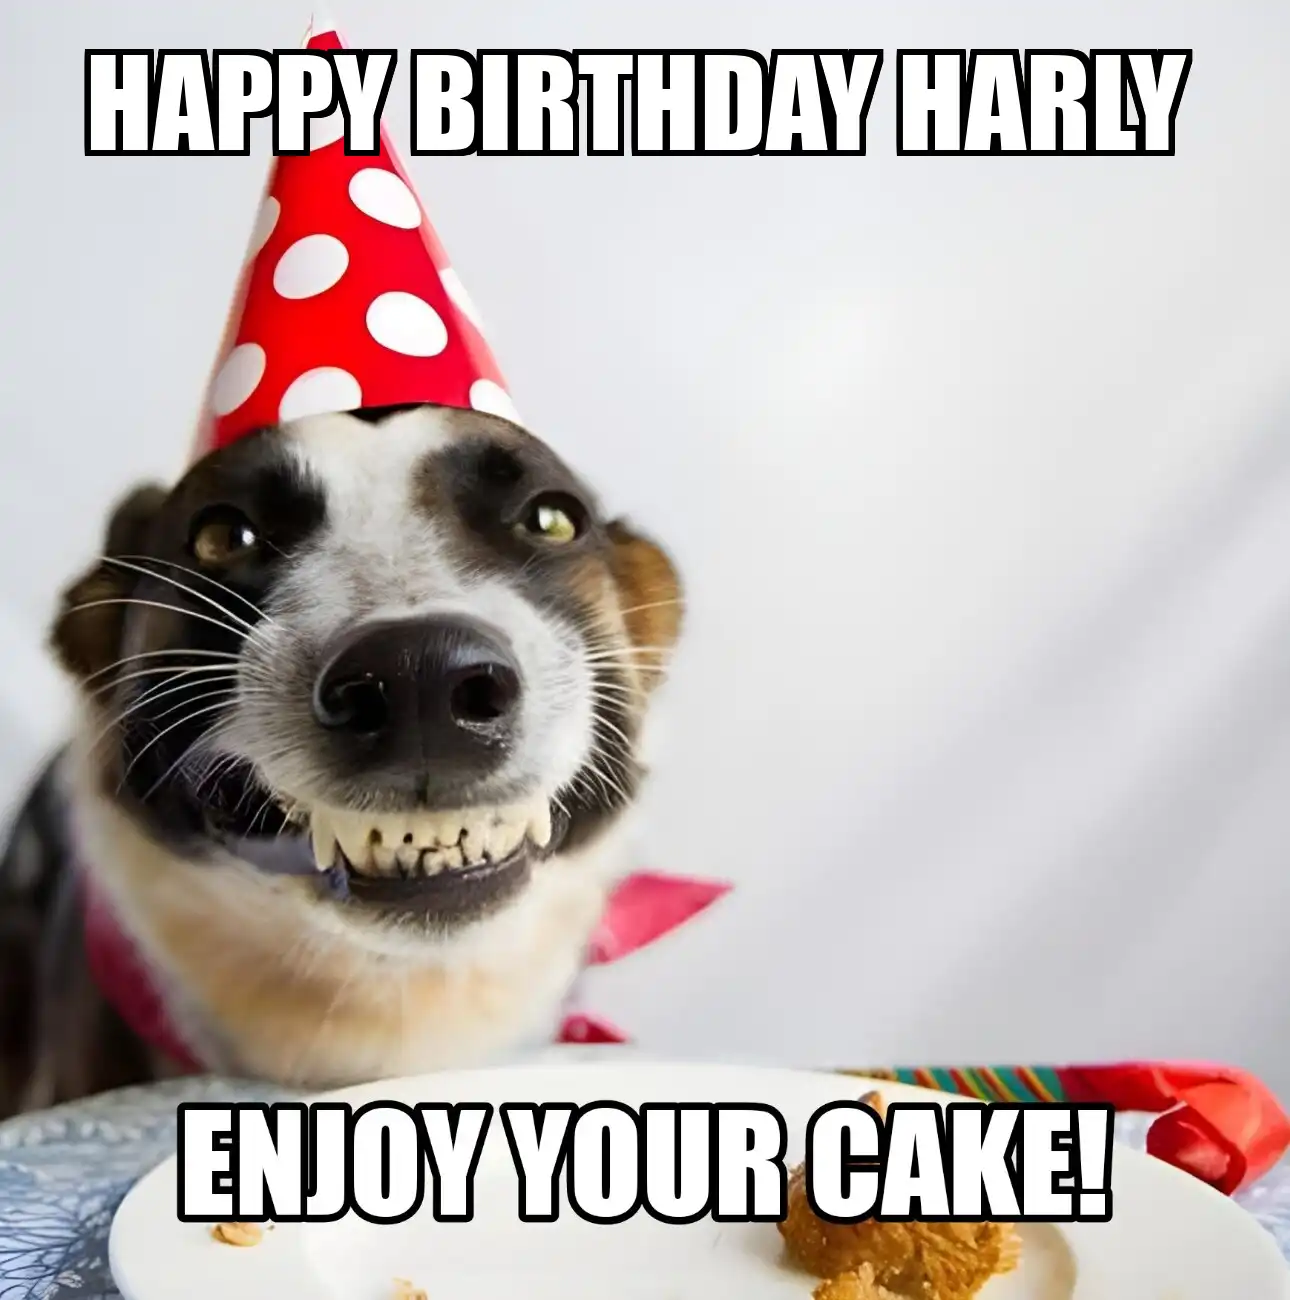 Happy Birthday Harly Enjoy Your Cake Dog Meme